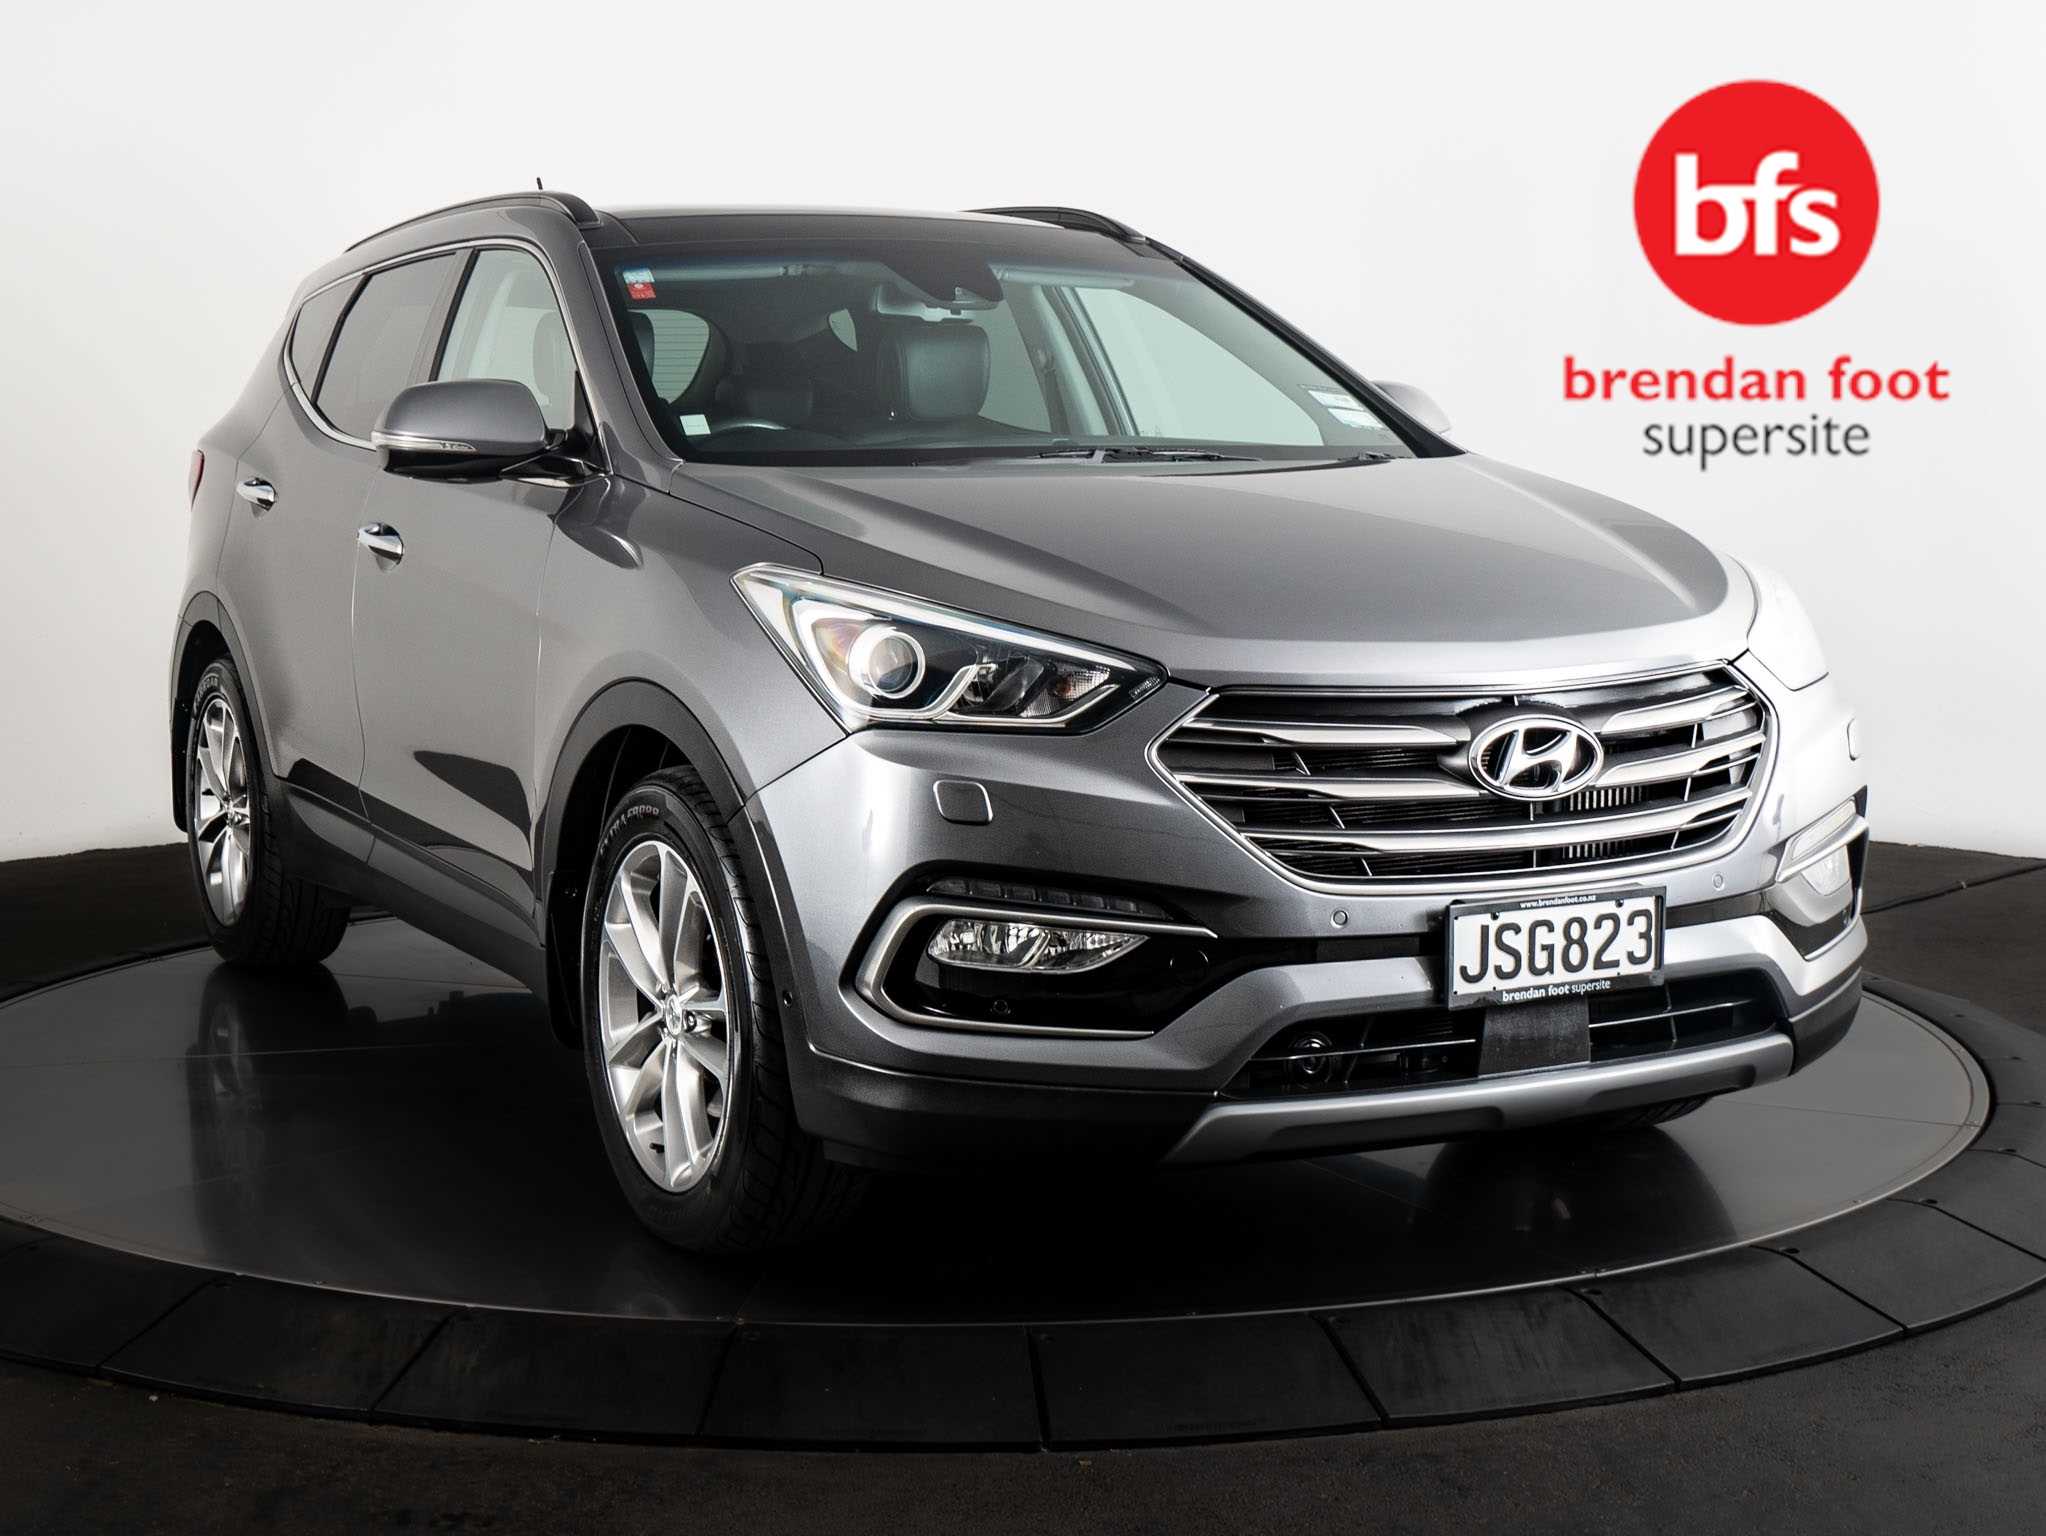 2016 Hyundai Santa Fe image 1